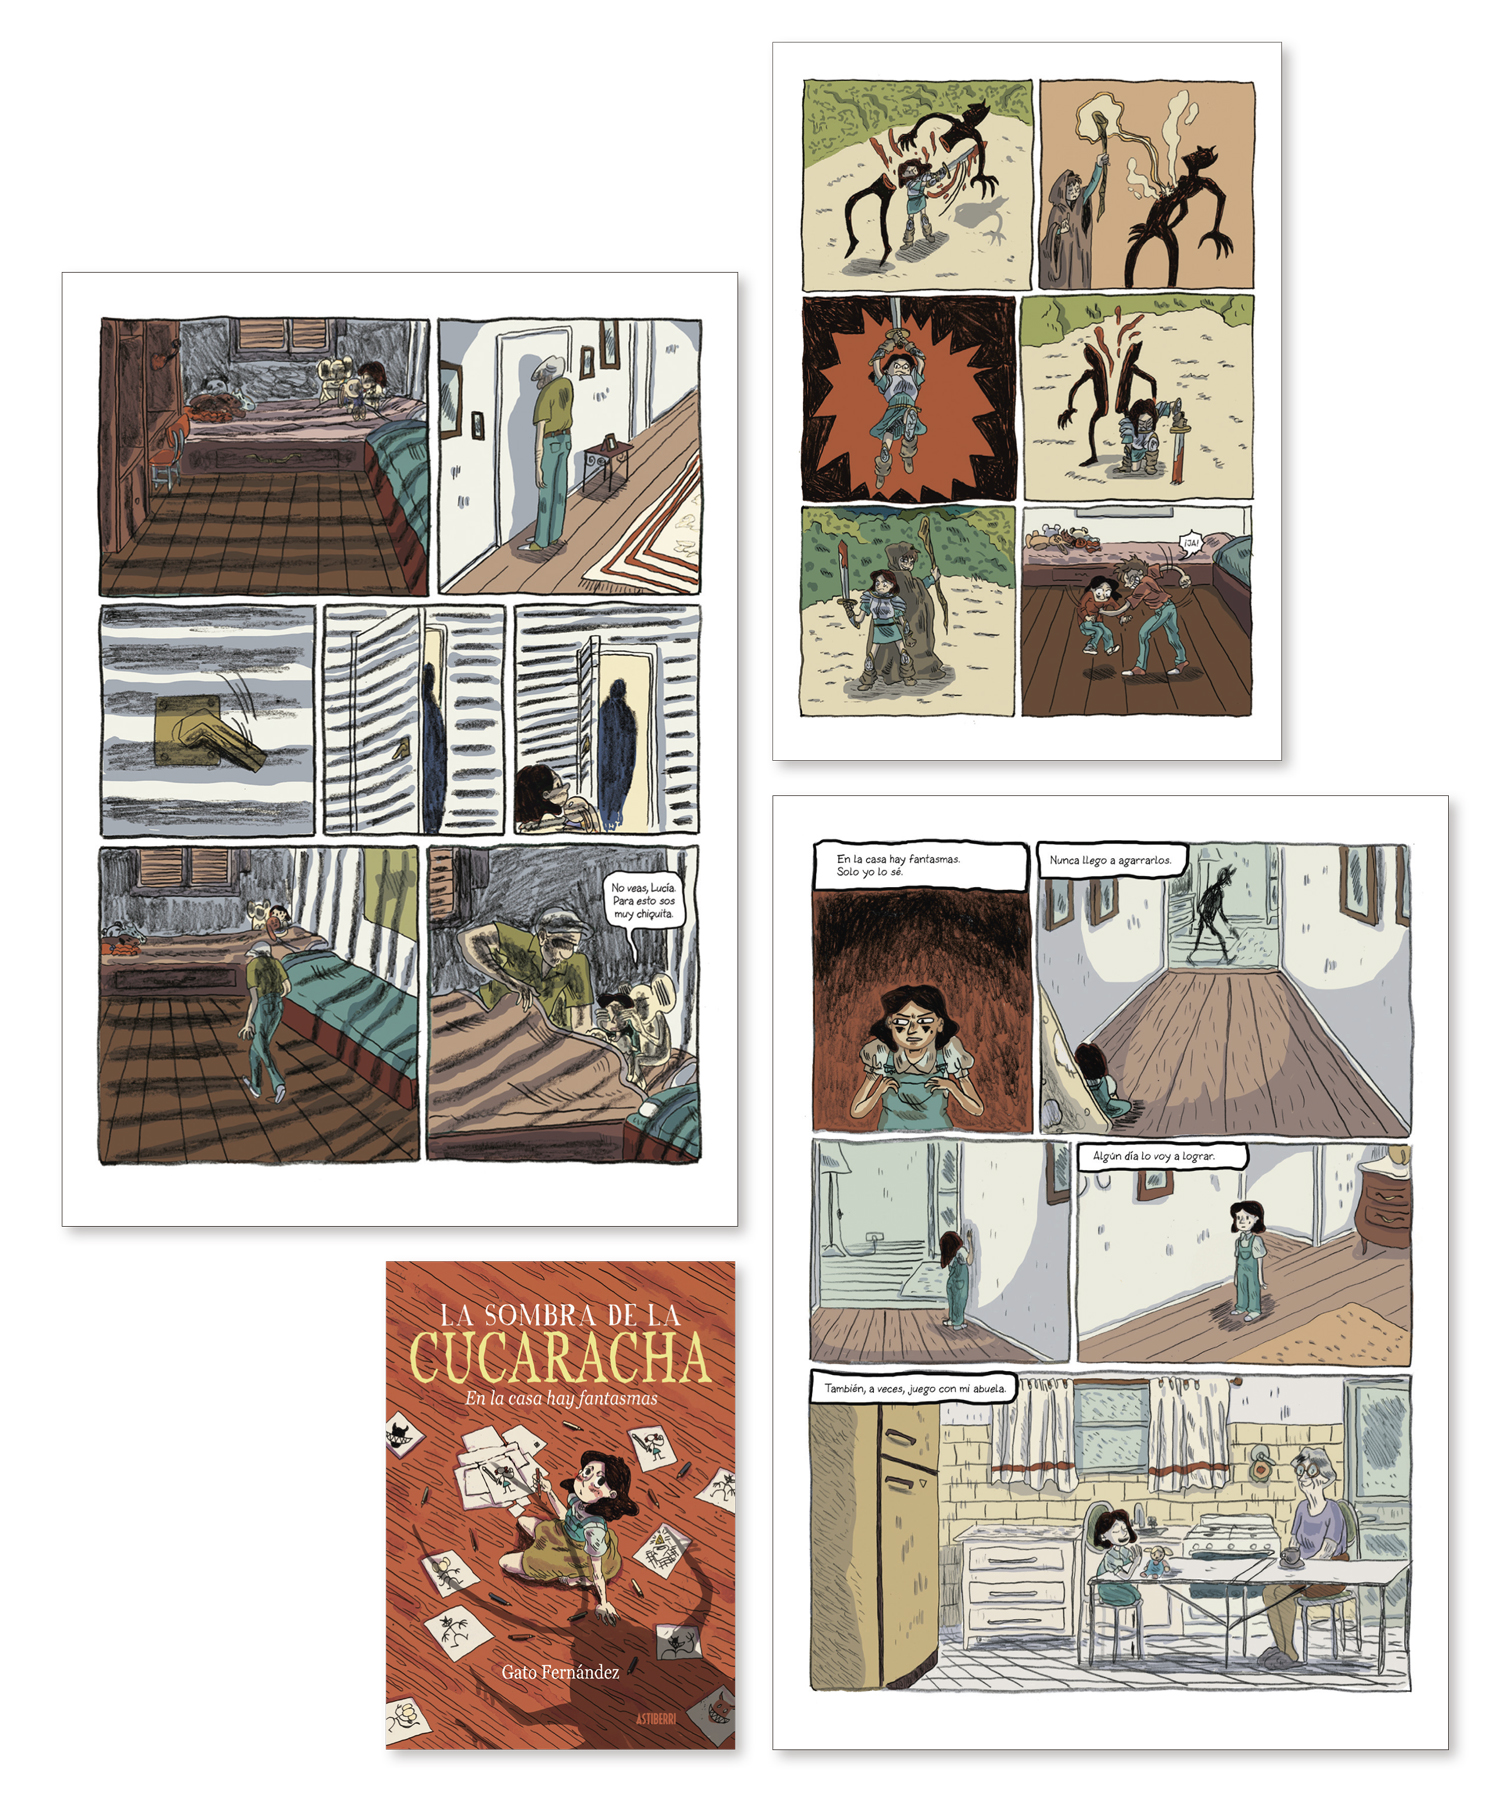 Algunas páginas de 'La sombra de la cucaracha', de Gato Fernández, publicado en España por Astiberri.